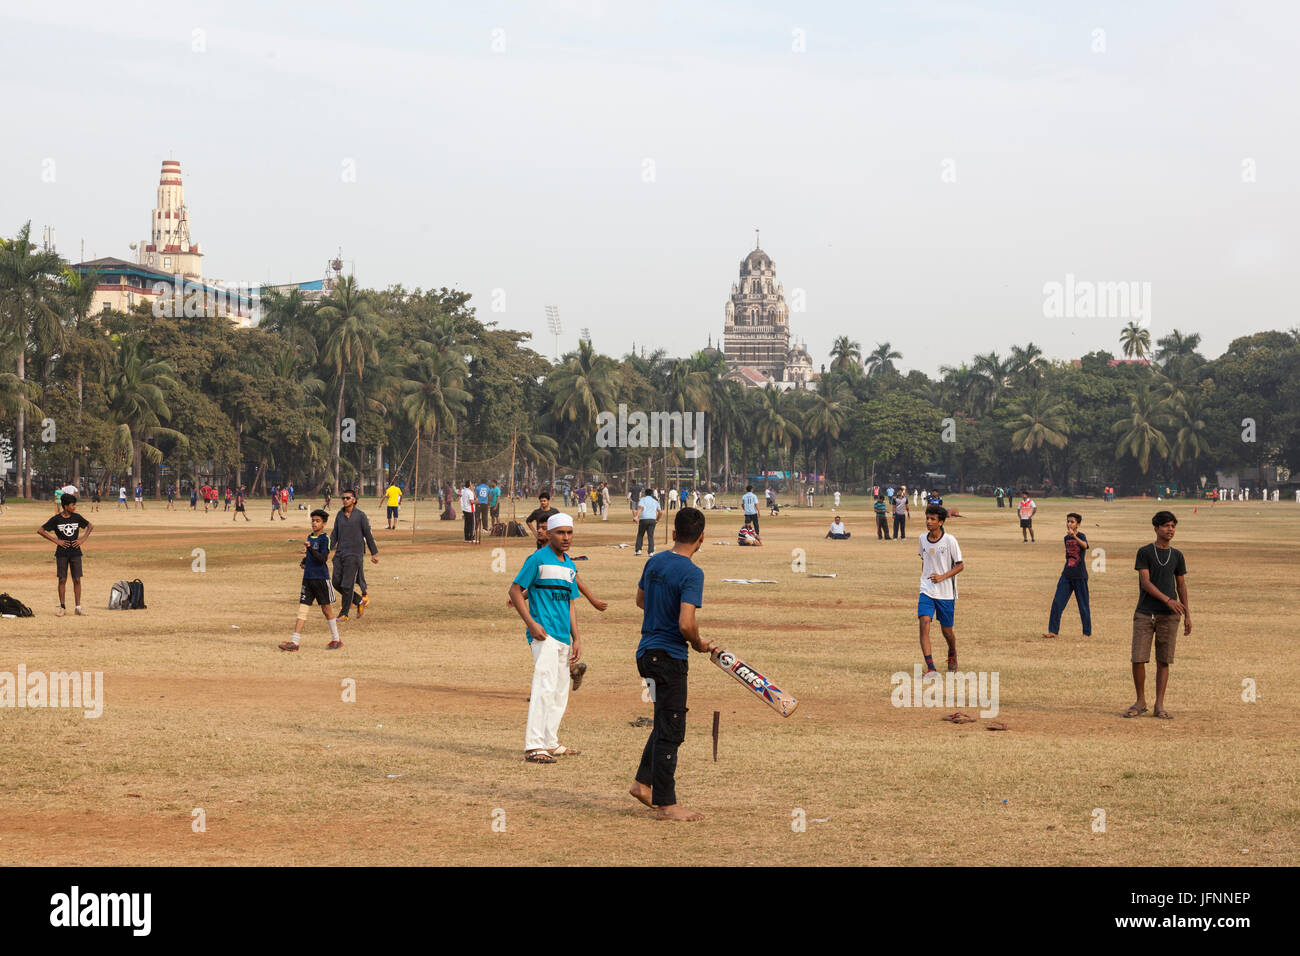 men playing cricket at the Oval Maidan, South Mumbai, India Stock Photo